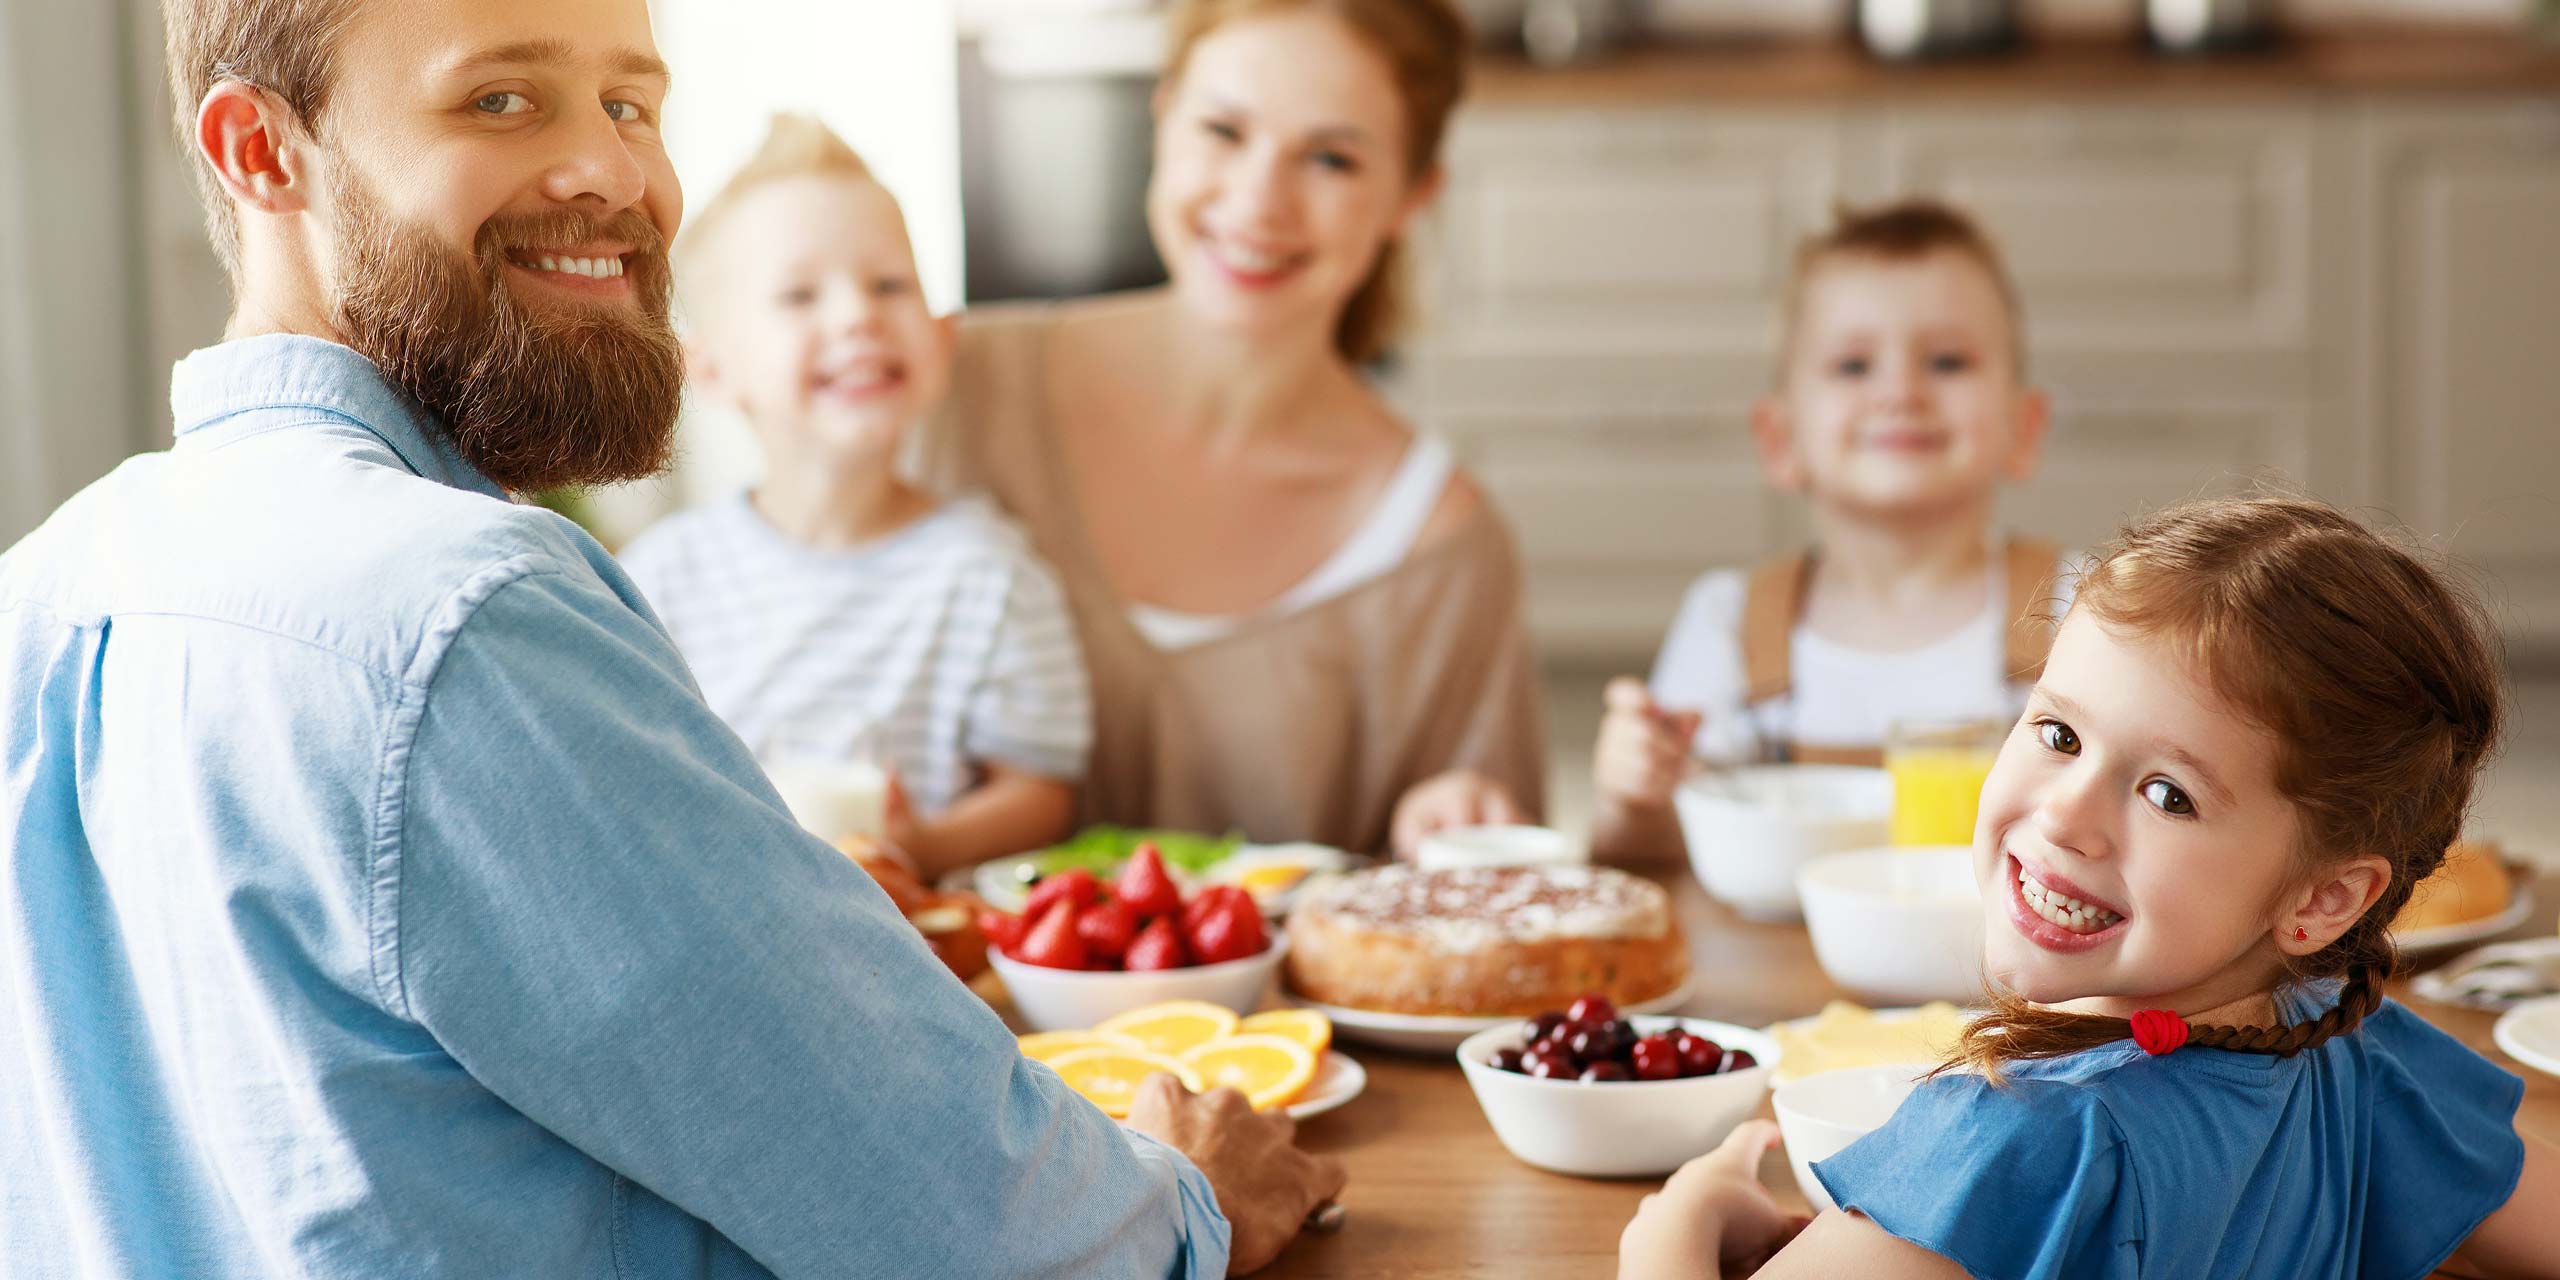 Junge Familie am Tisch mit verschiedenen Backwaren und Obst, alle lächeln in die Kamera.